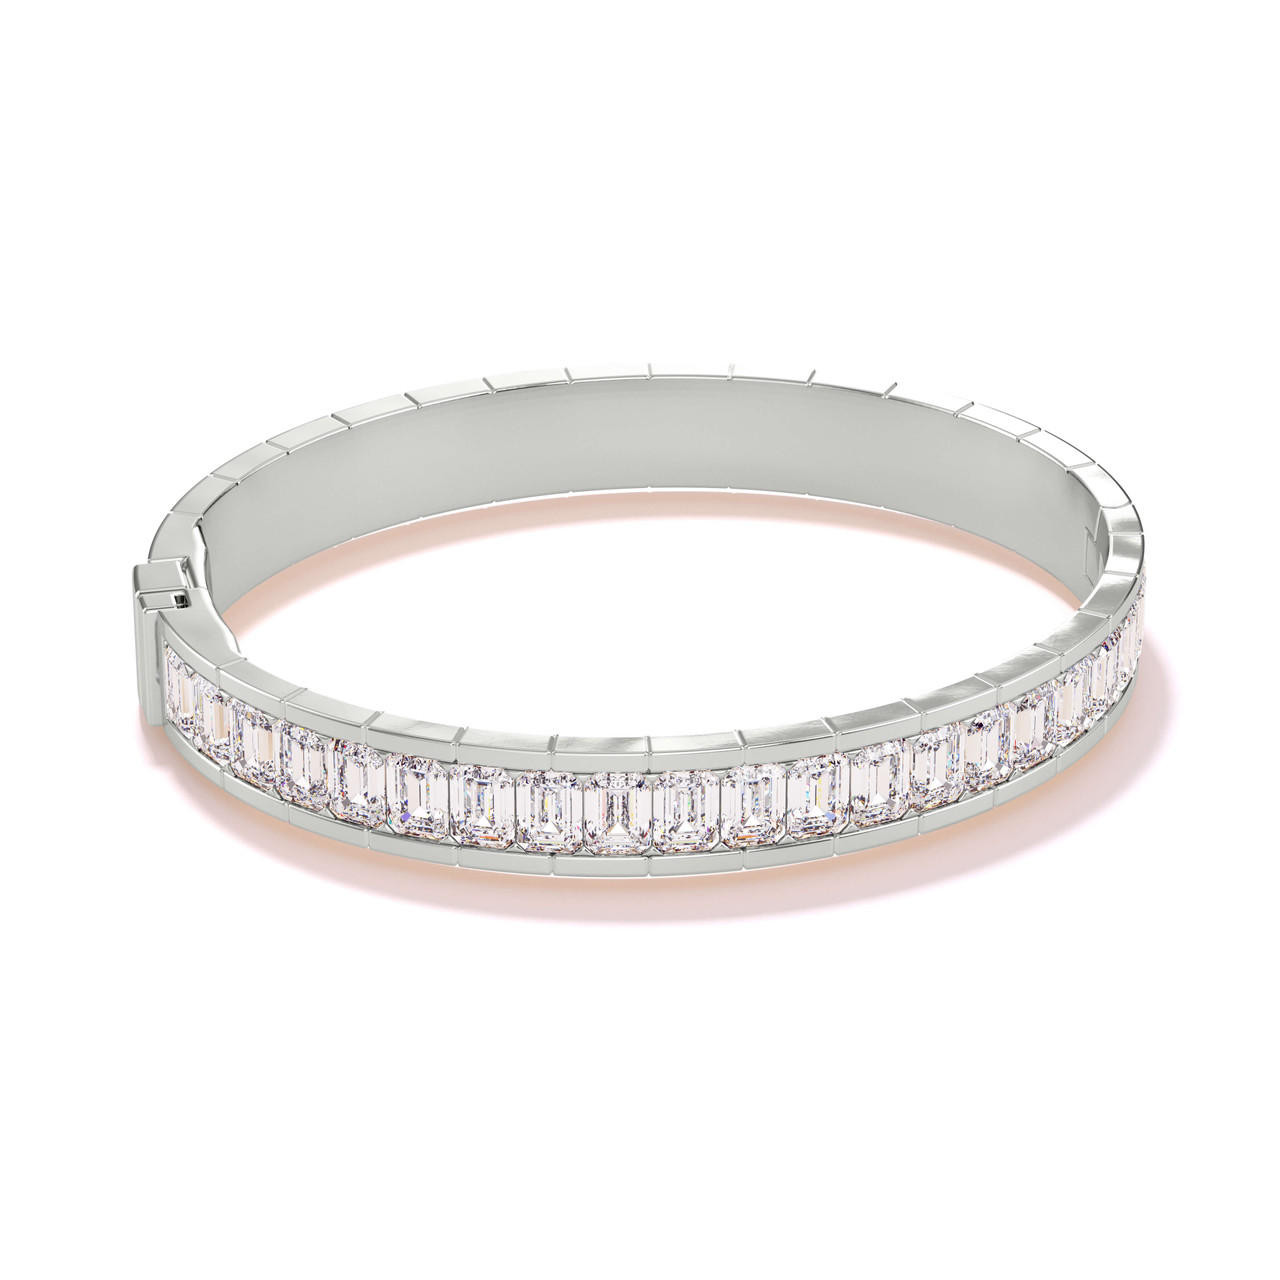 Magna Bracelet with White Baguette Cut Diamonds – Retrouvai